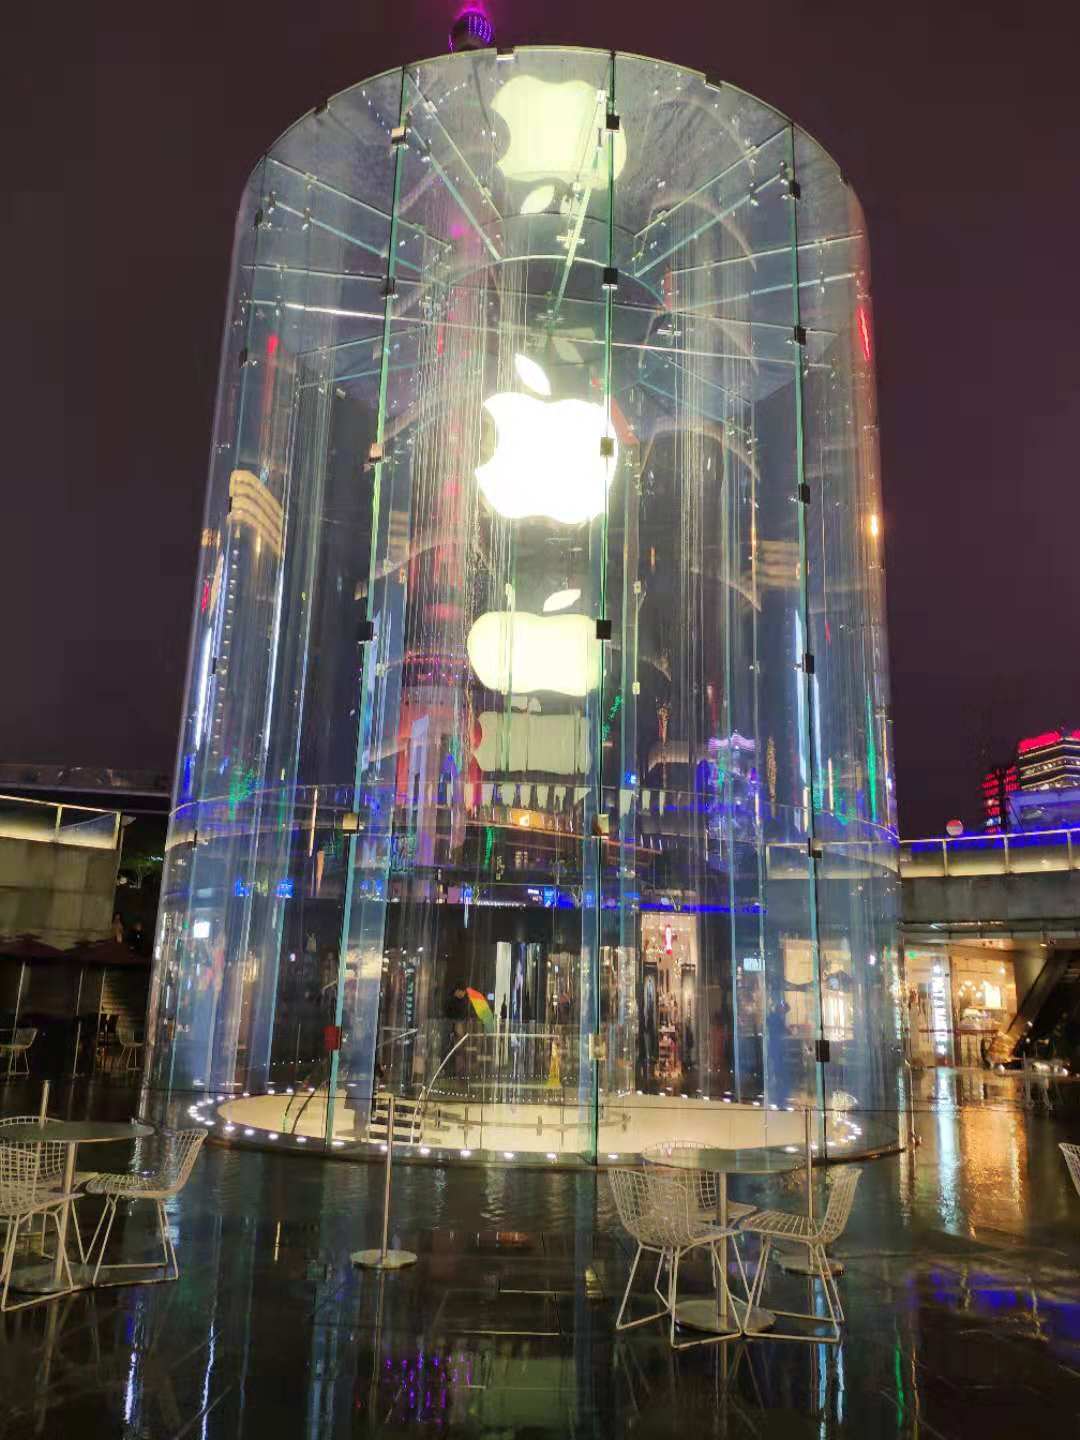 苹果上海旗舰店未收到禁售令 高通再提强制执行申请